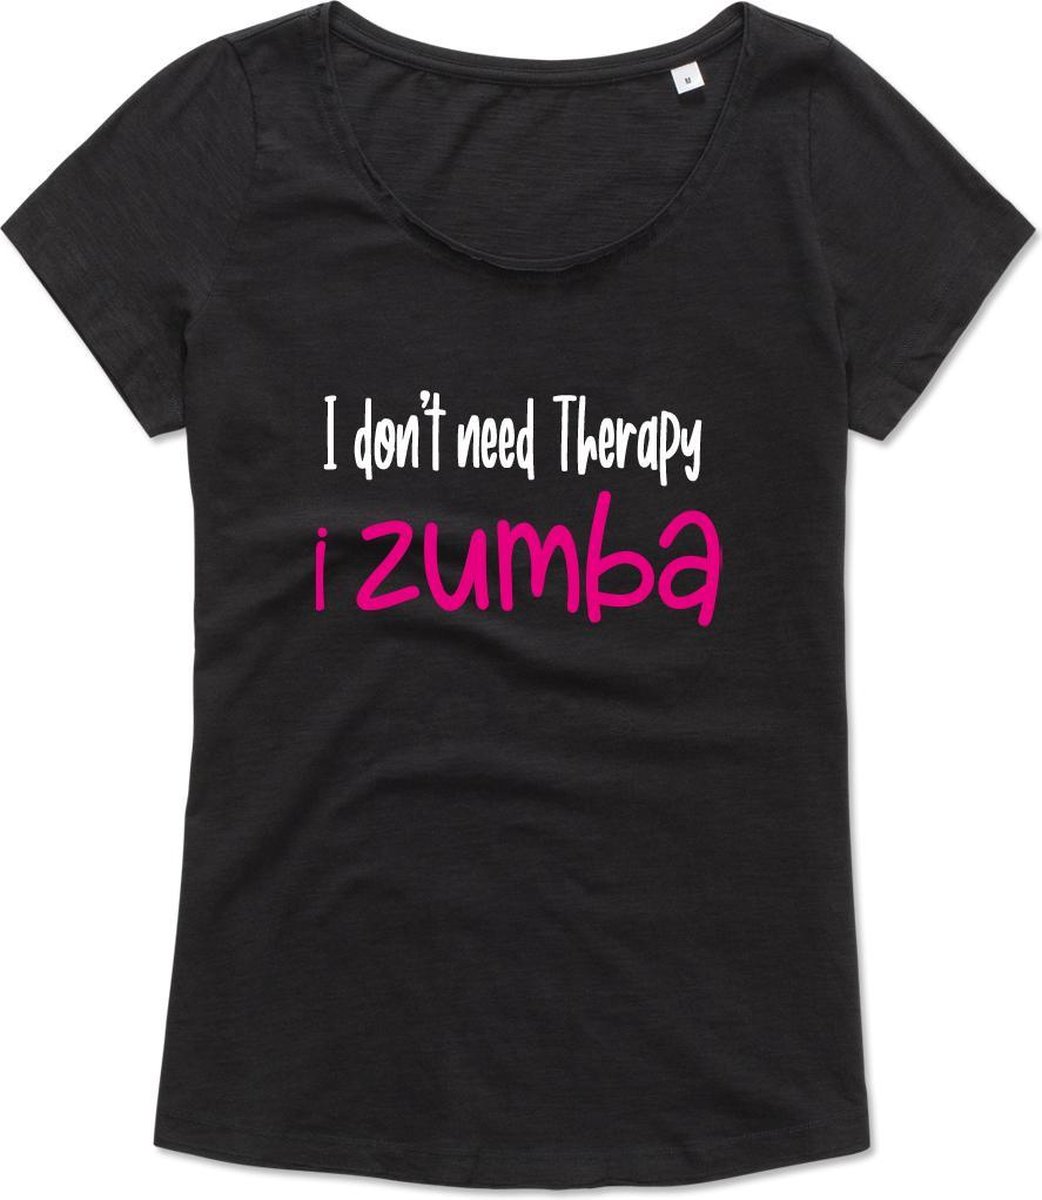 Zumba T-shirt - Workout T-shirt - Dance T-shirt, dans t-shirt, sport t-shirt, Gym T-shirt, Lifestyle T-shirt - I Don't need therapy, I zumba – M